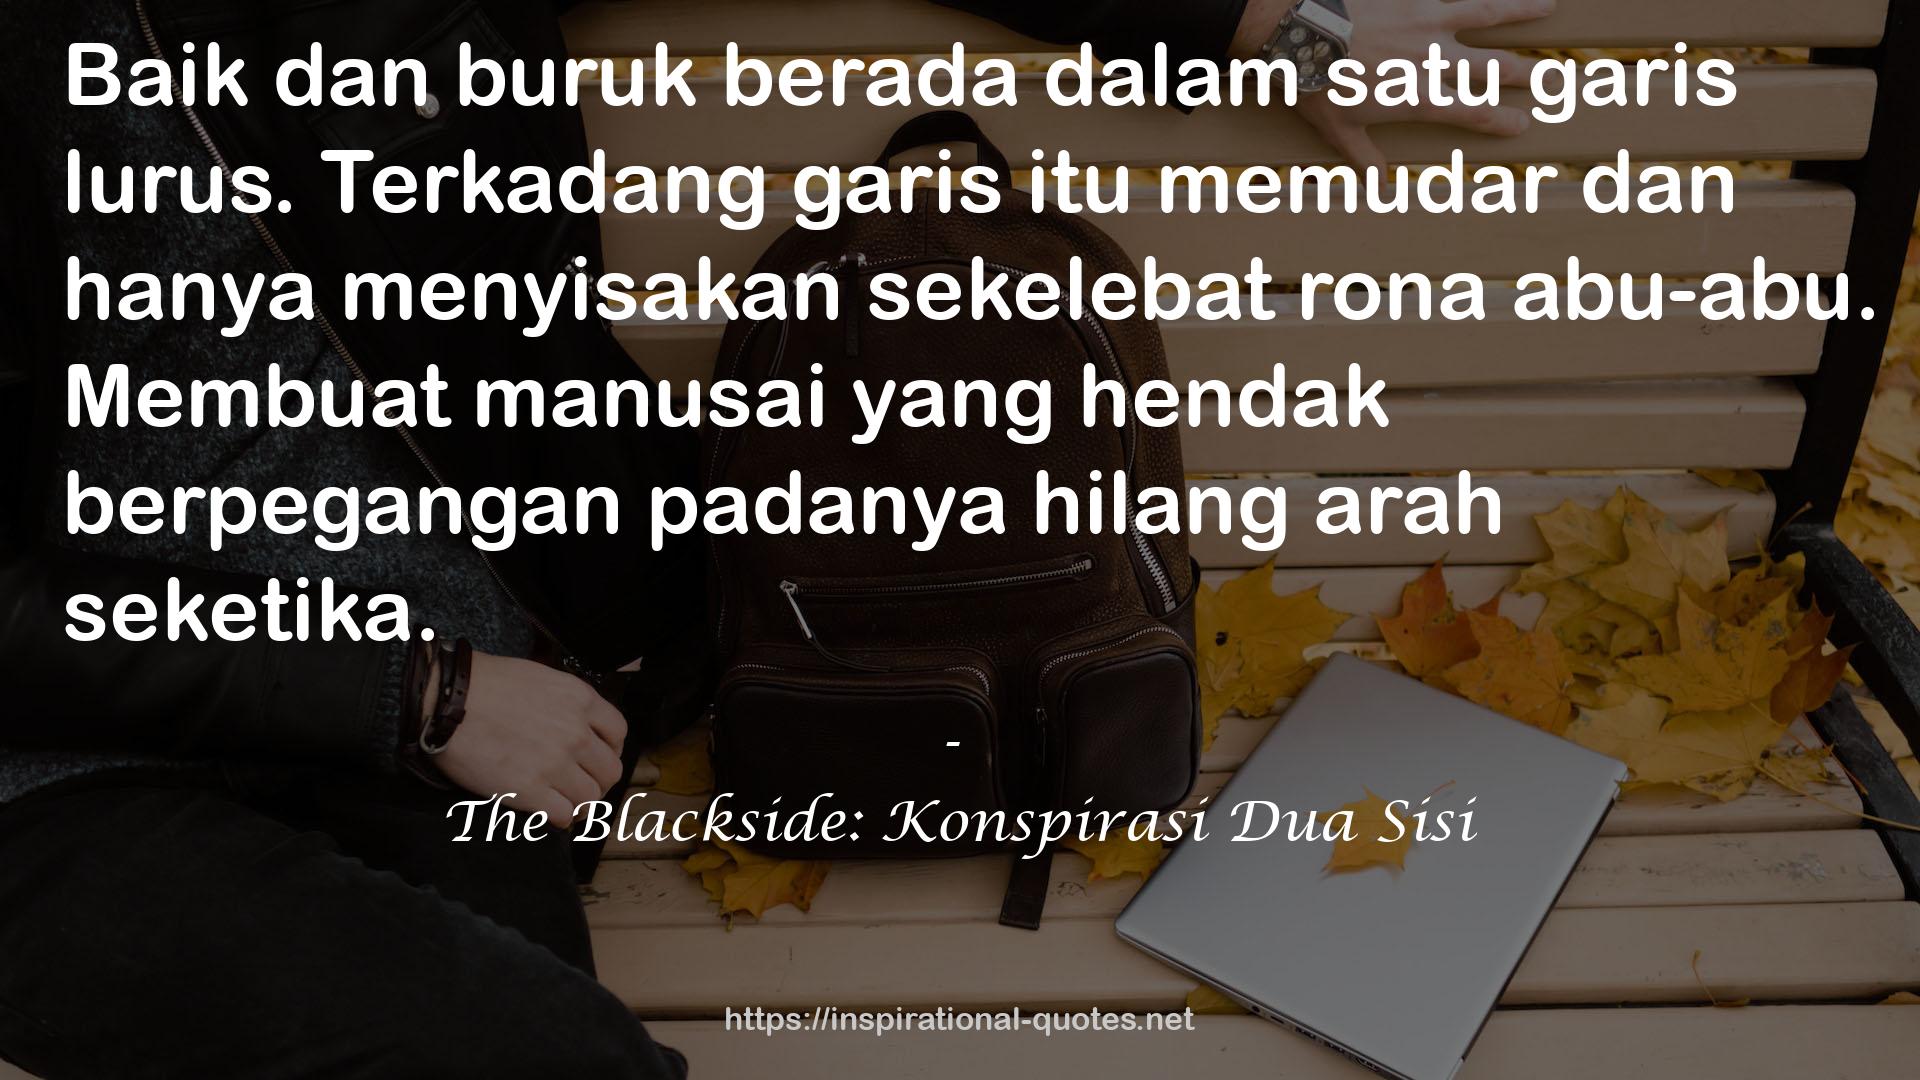 The Blackside: Konspirasi Dua Sisi QUOTES